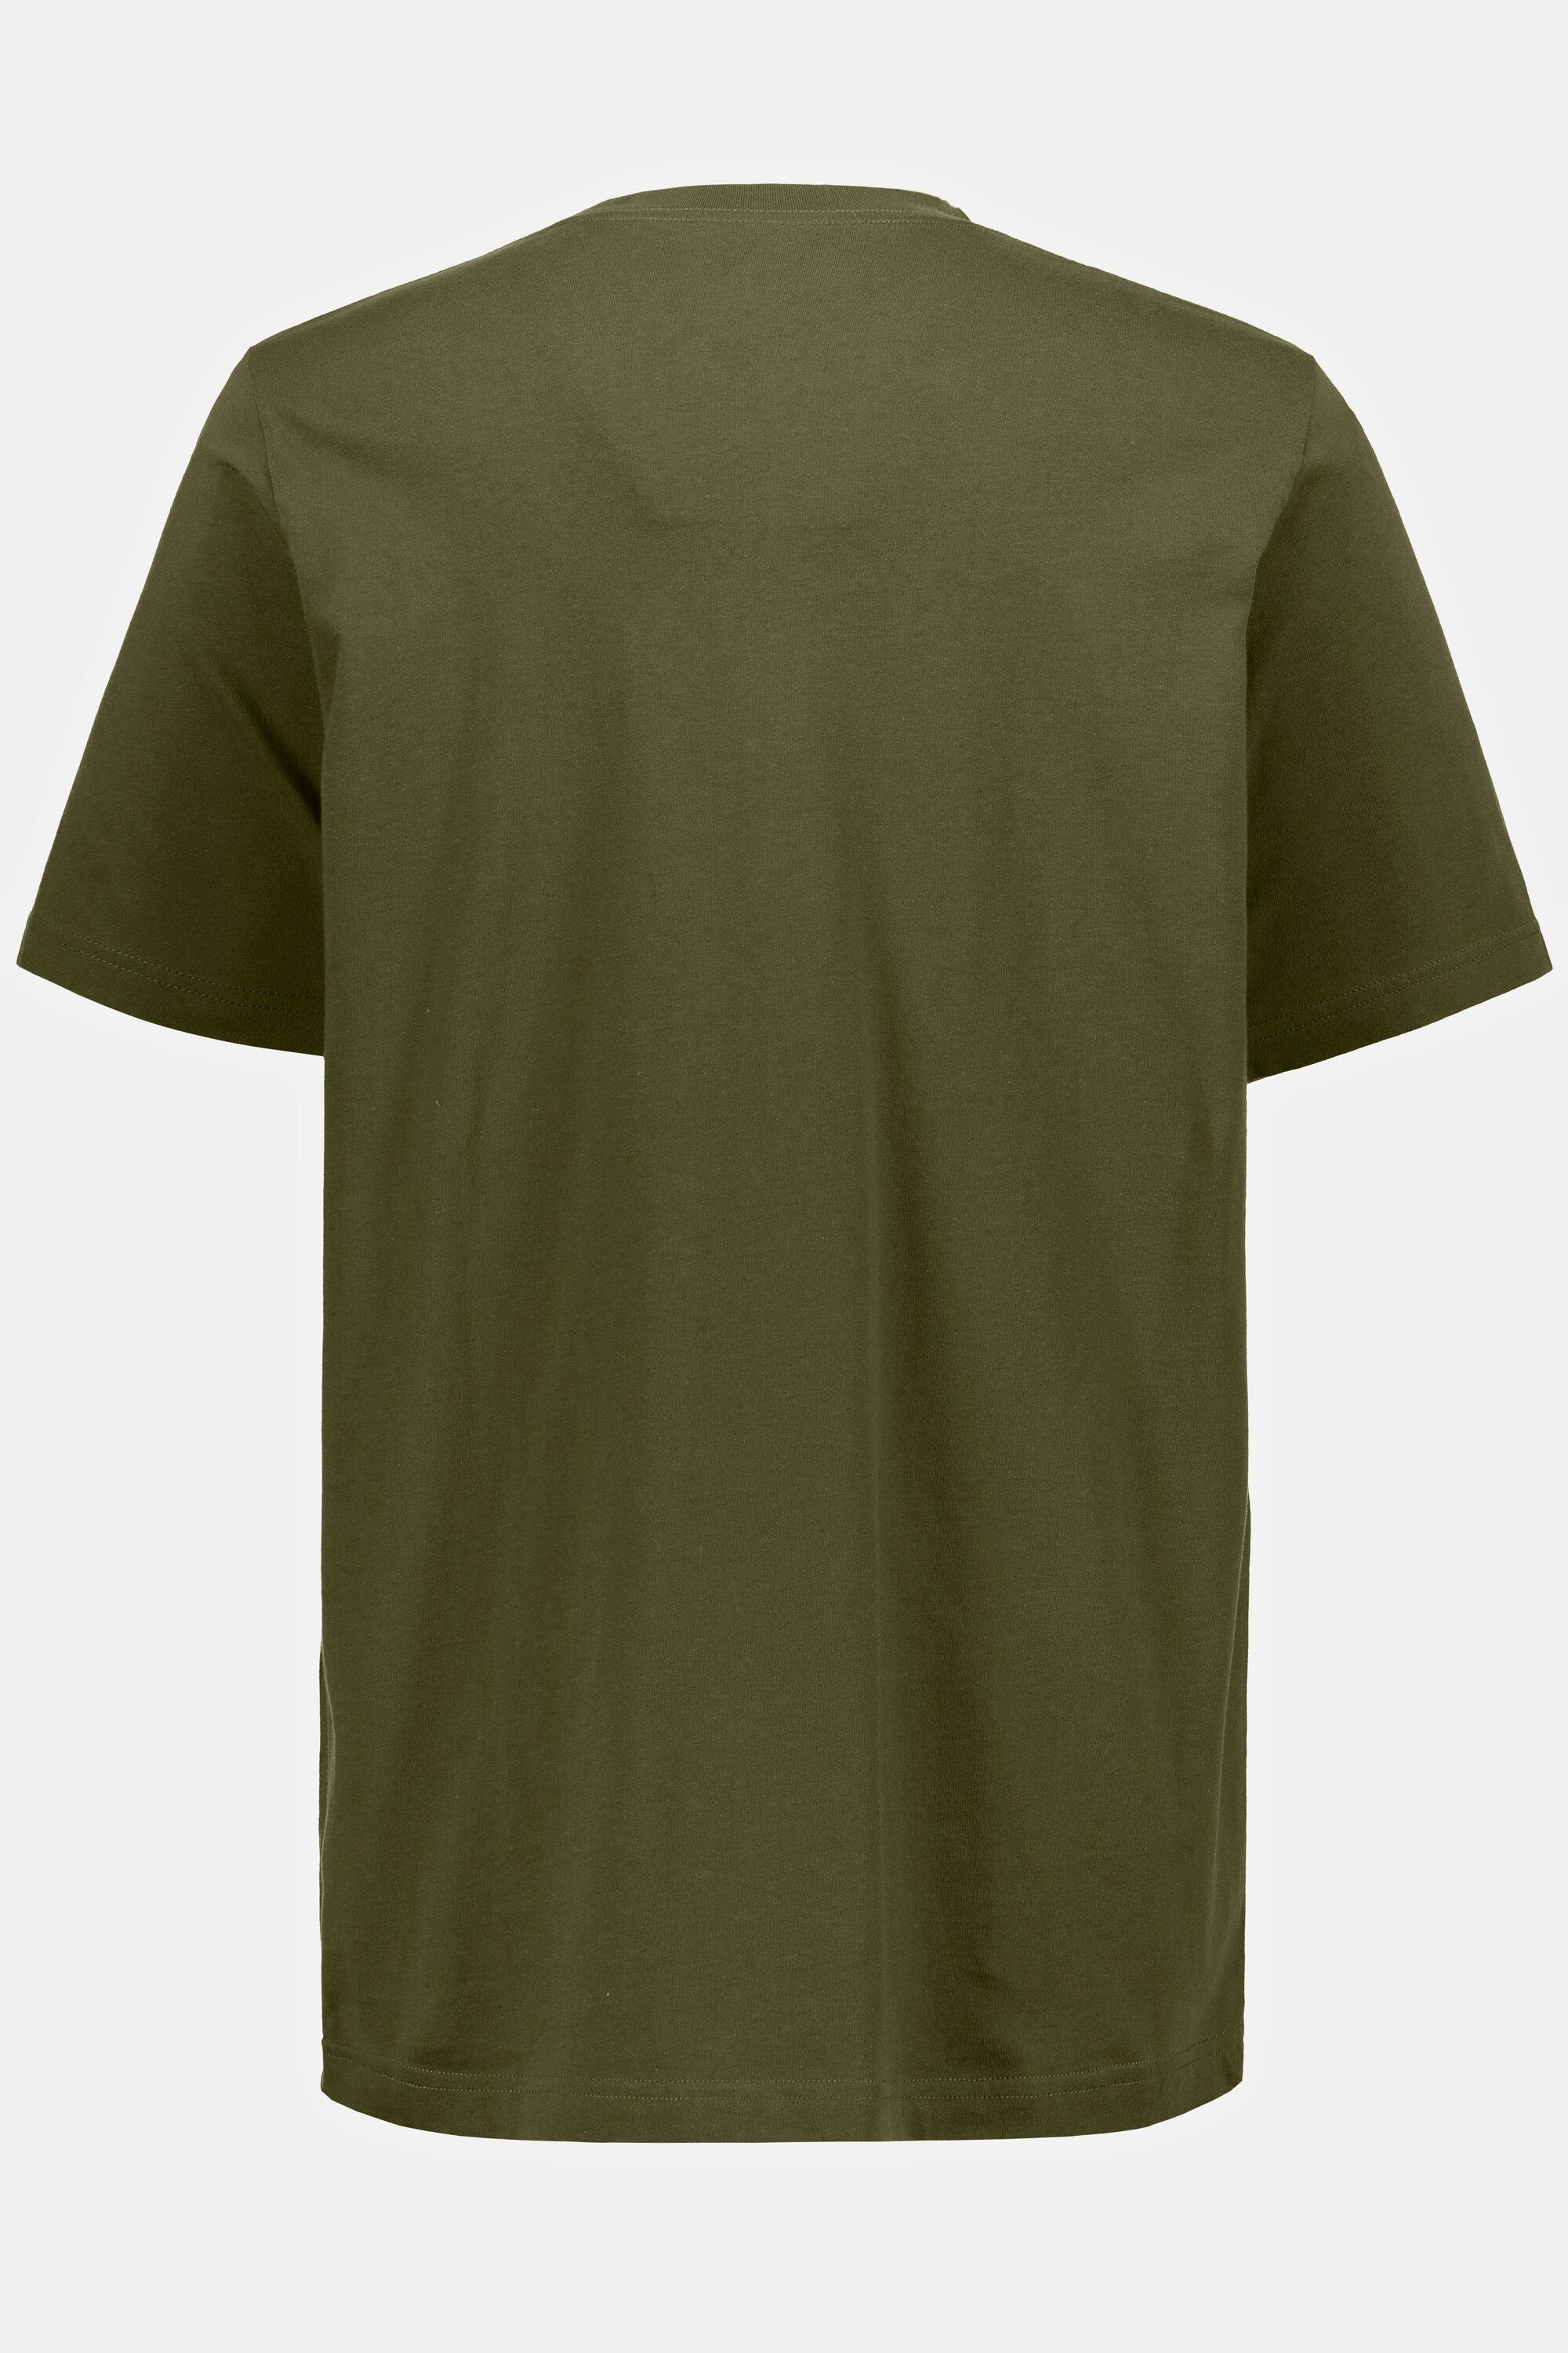 T-Shirt T-Shirt khaki V-Ausschnitt JP1880 8XL Basic dunkel bis